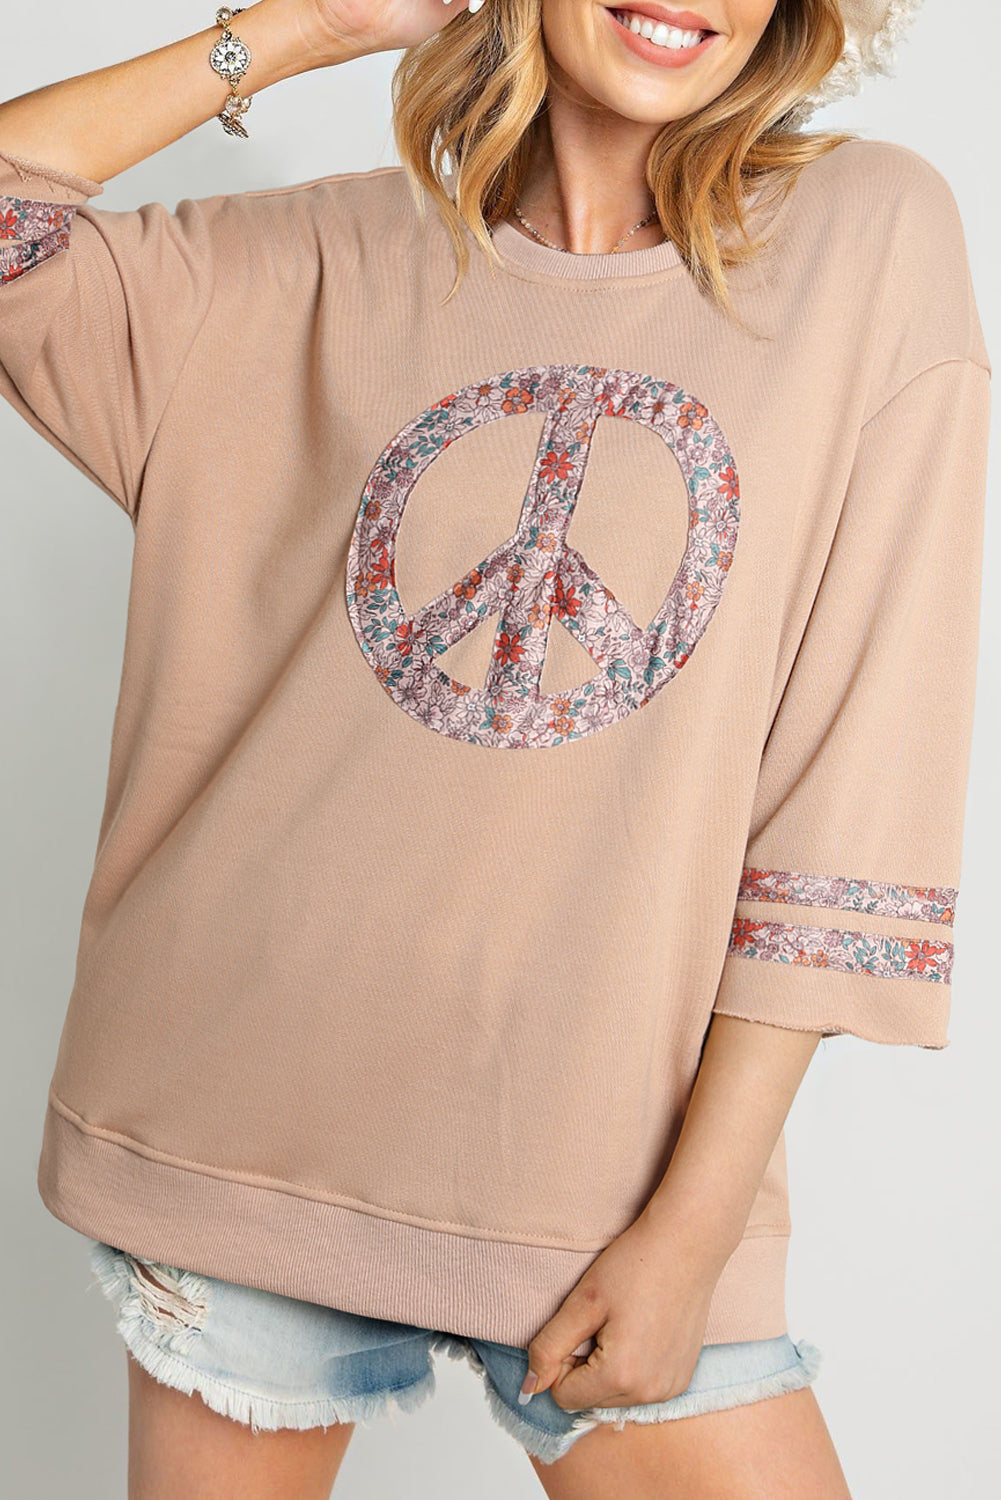 Floral Peace Sign 3/4 Drop Sleeve Shirt